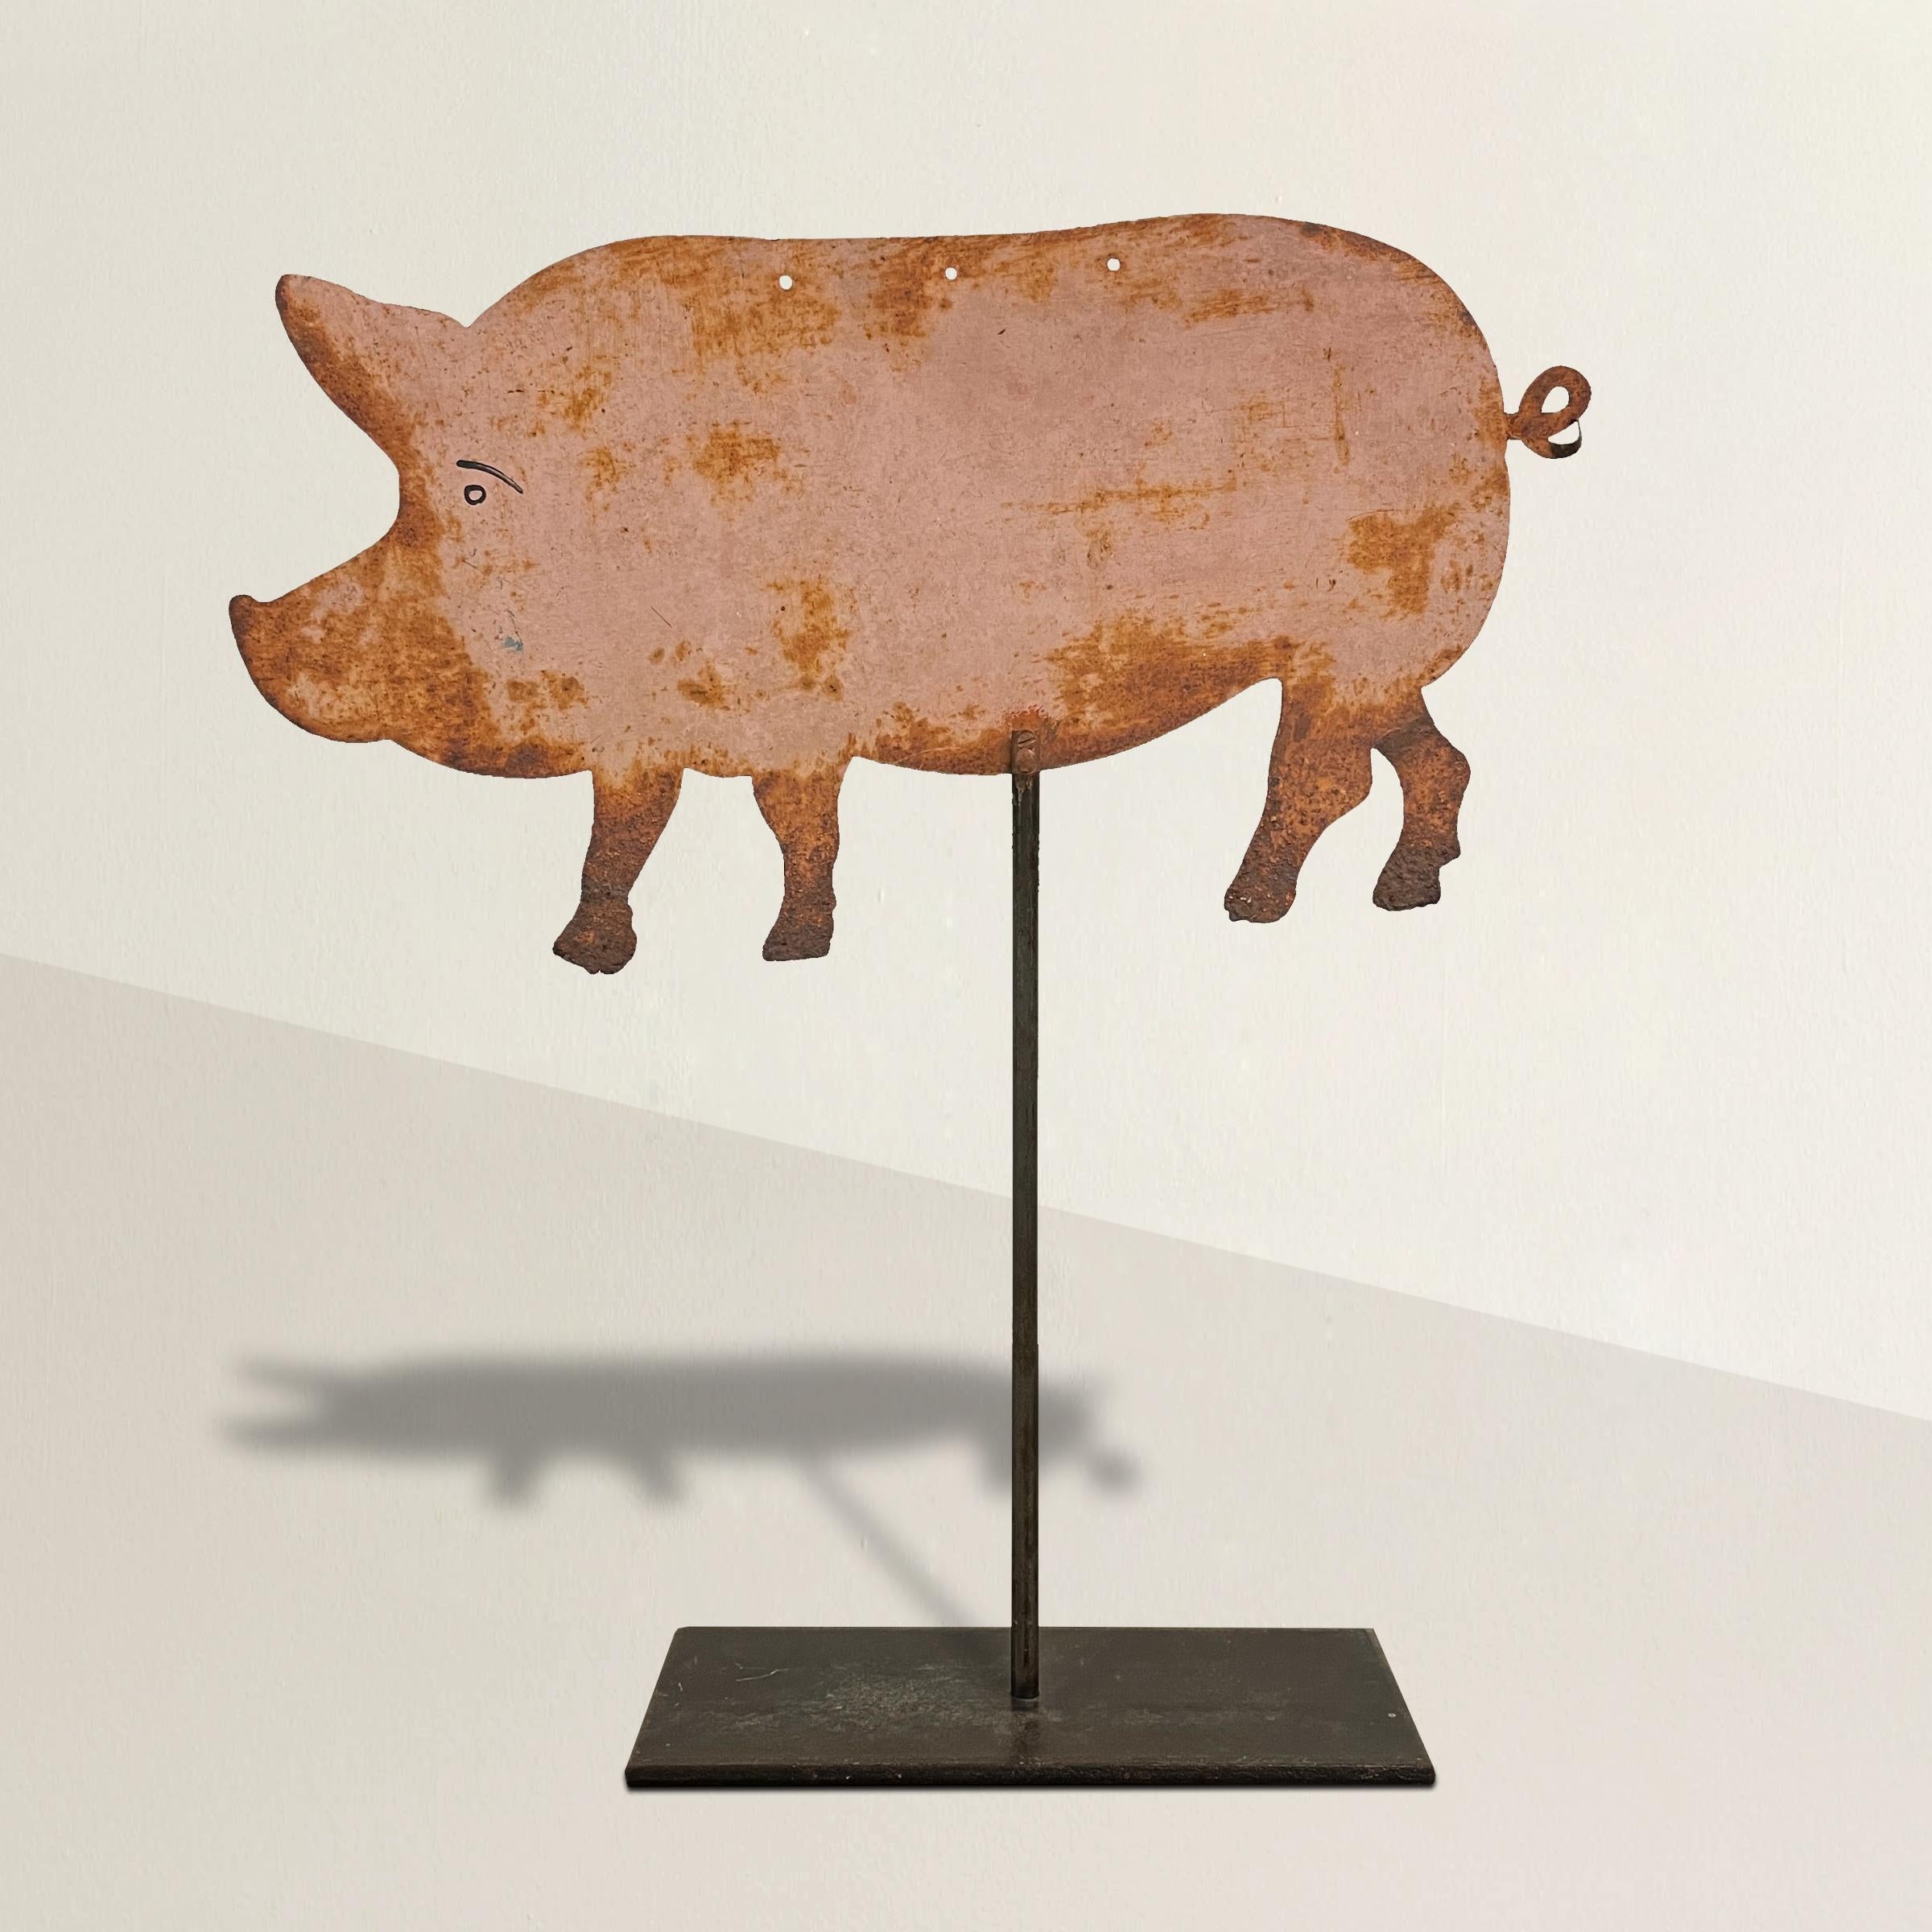 Une amusante enseigne de boucherie en acier peint français du début du 20e siècle, en forme de cochon, montée sur un support de table en acier. À l'origine, l'enseigne était suspendue aux trois trous situés à l'arrière du cochon.